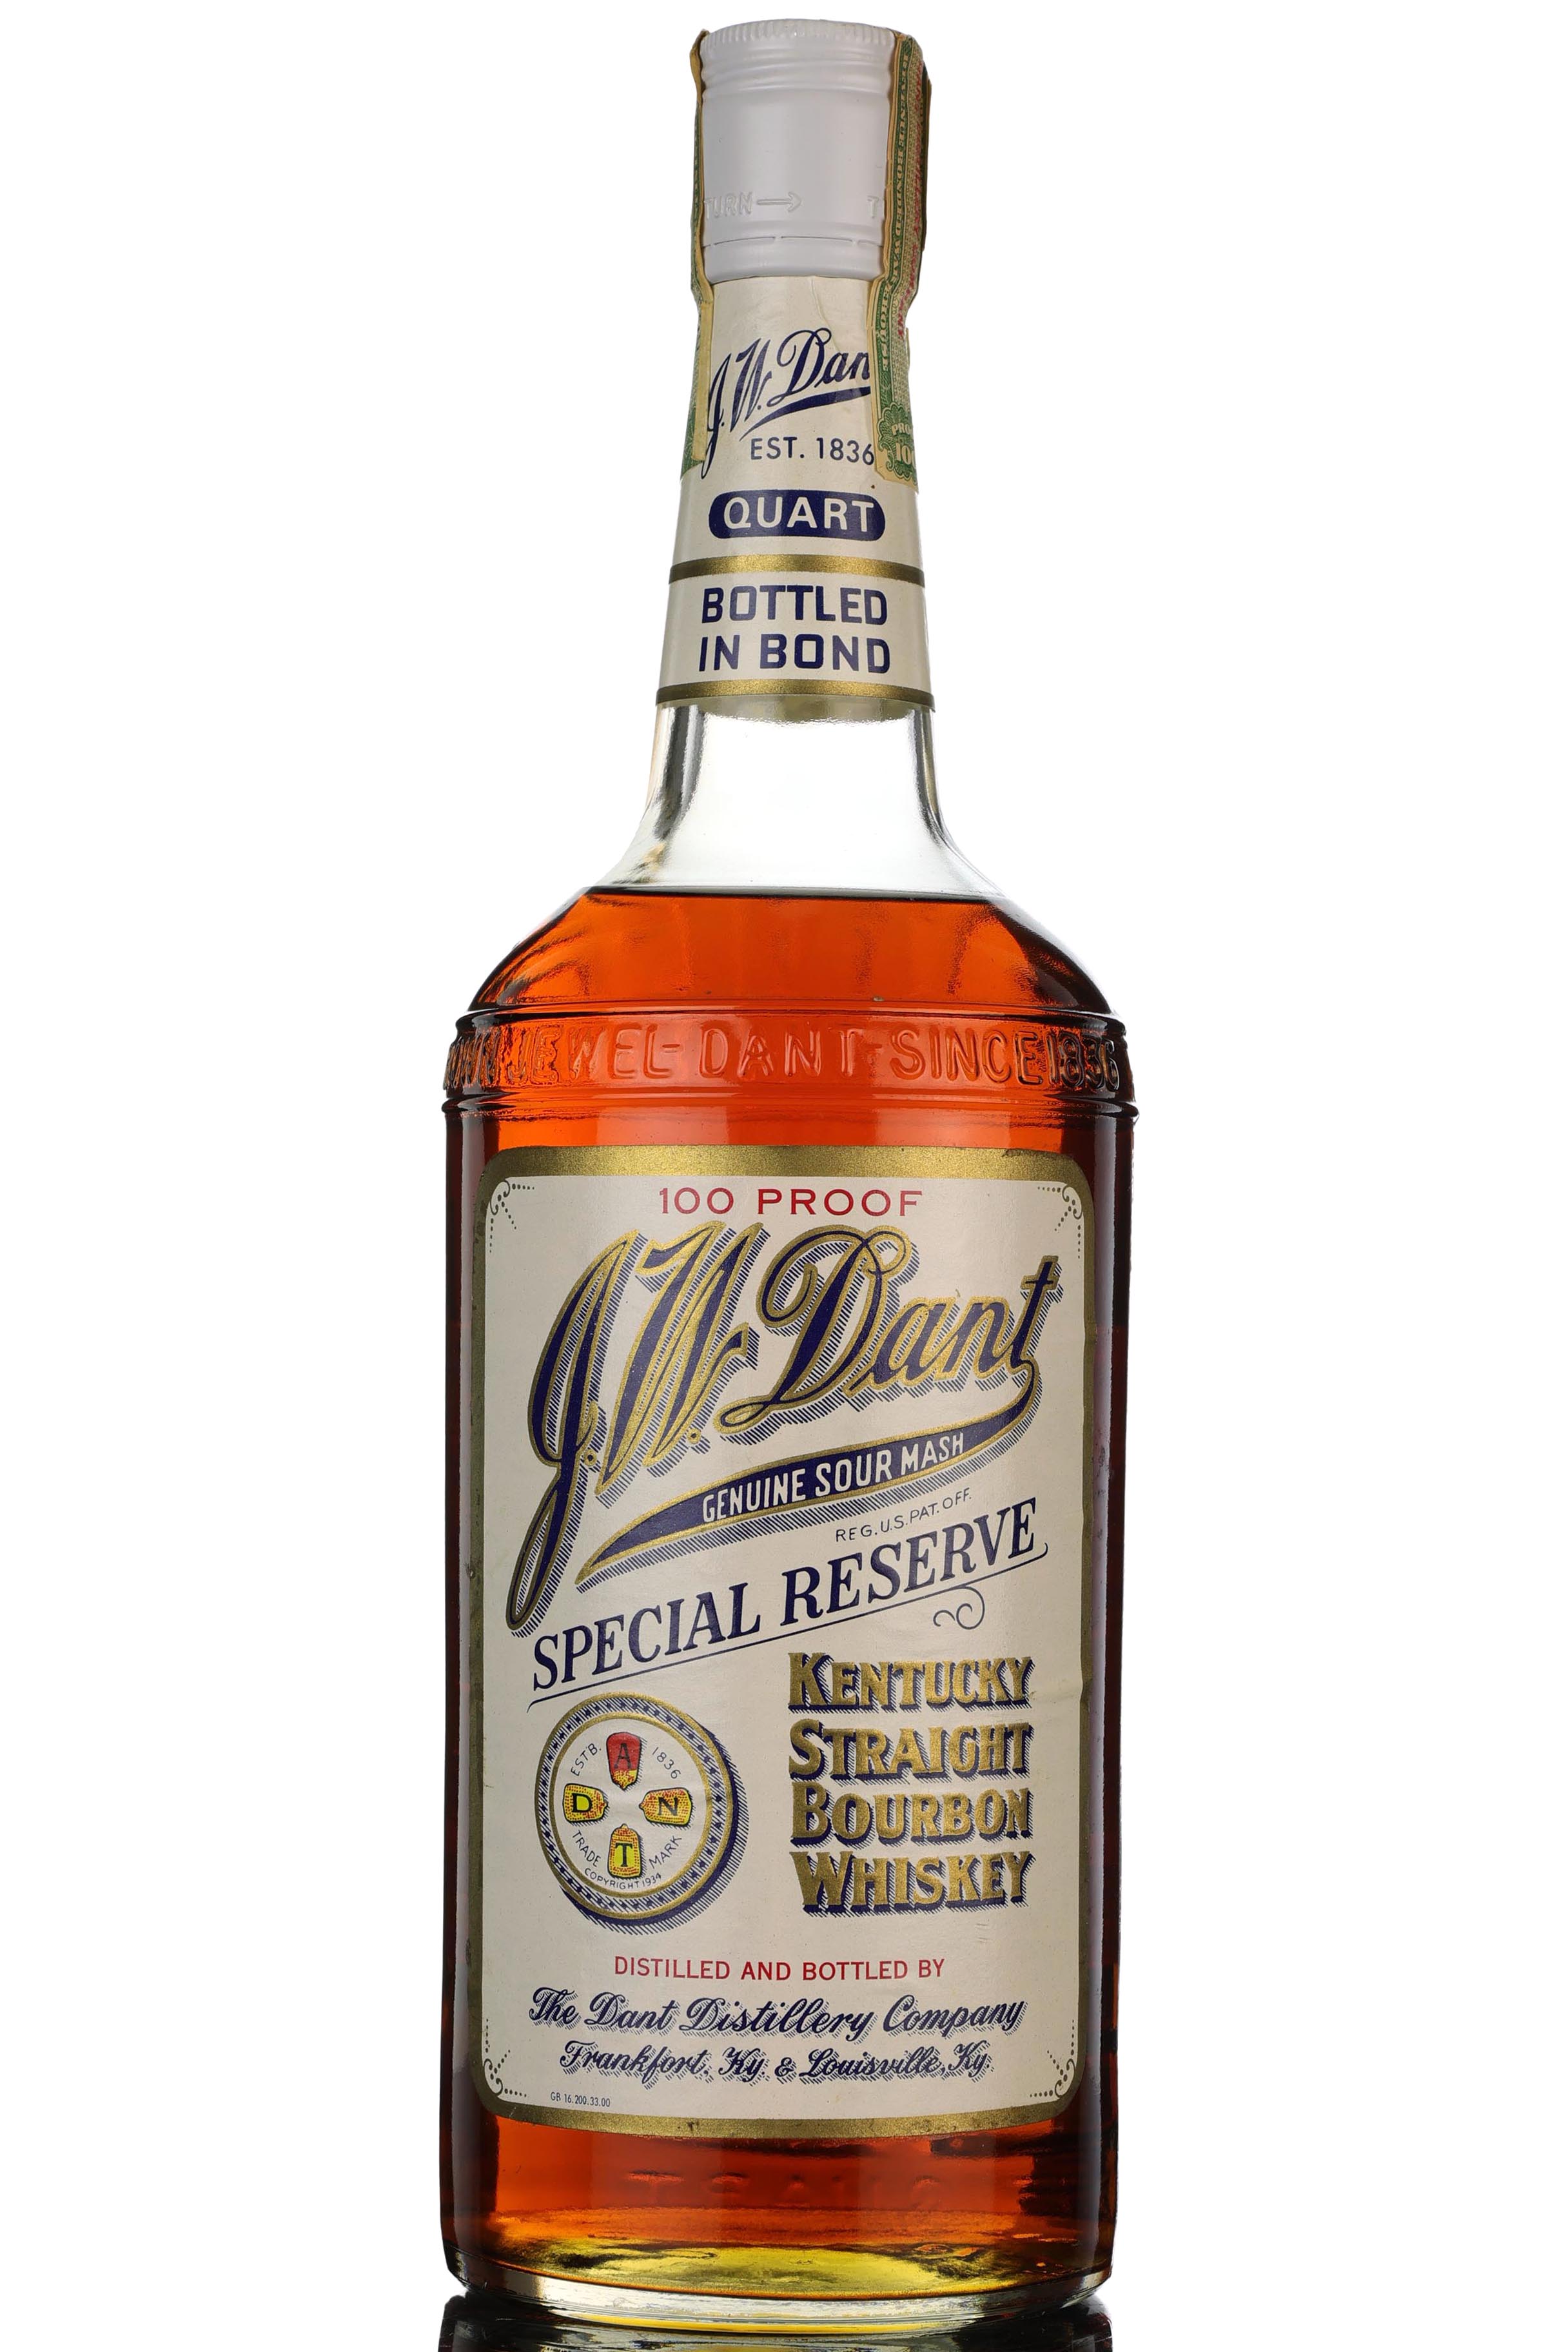 J W Dant Special Reserve Bourbon - 1980s - 100 Proof - 1 Quart